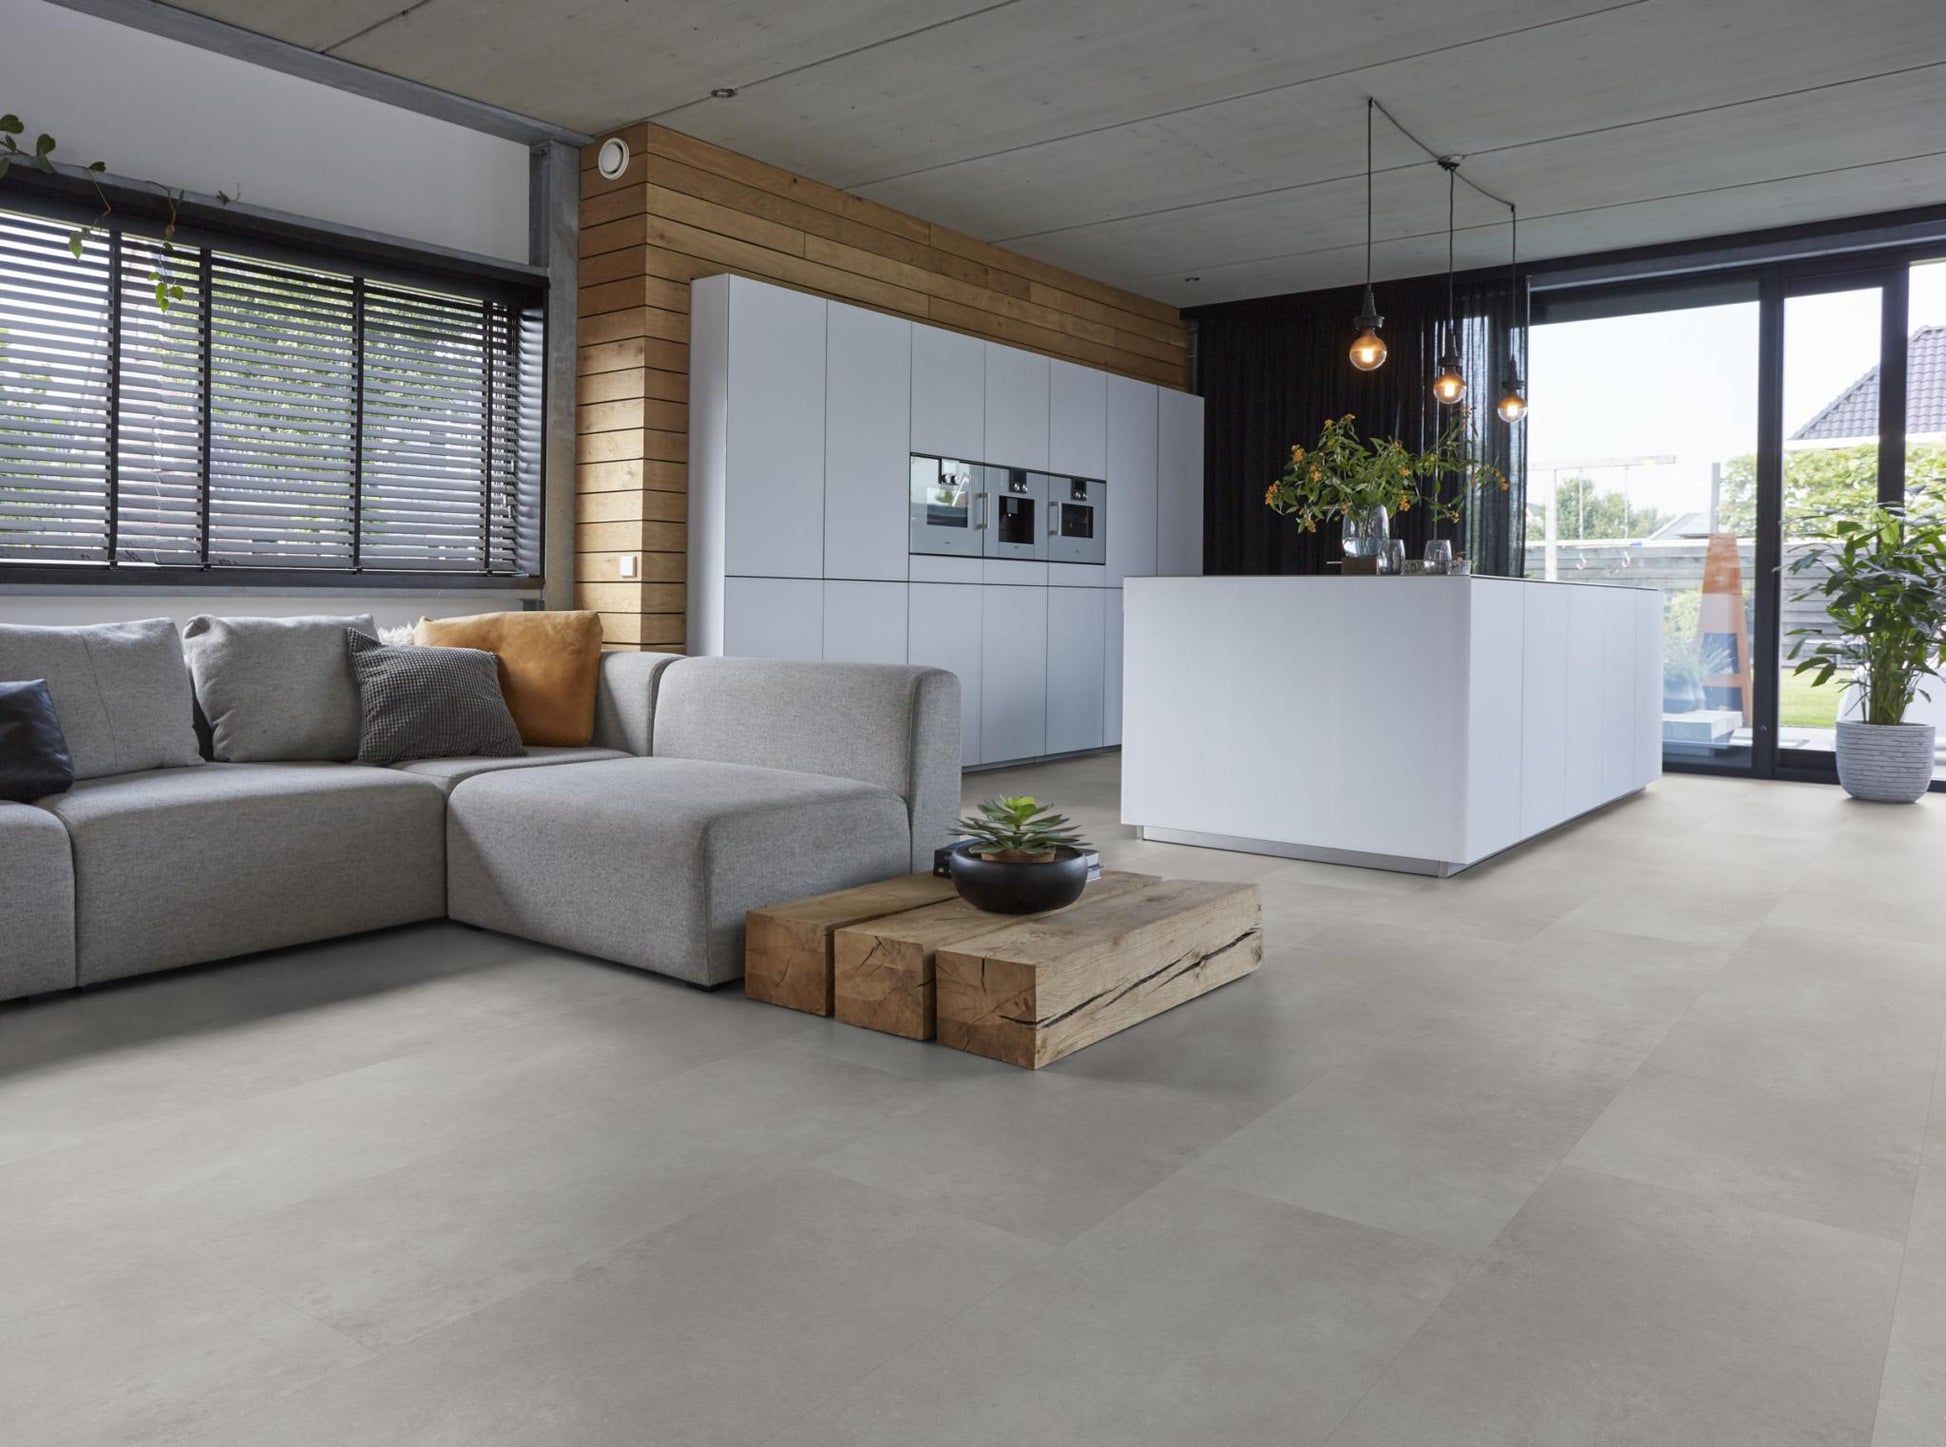 Floorlife Southwark Grey 4113 Tegel Dryback PVC - 91.4 x 45.7 cm - Solza.nl